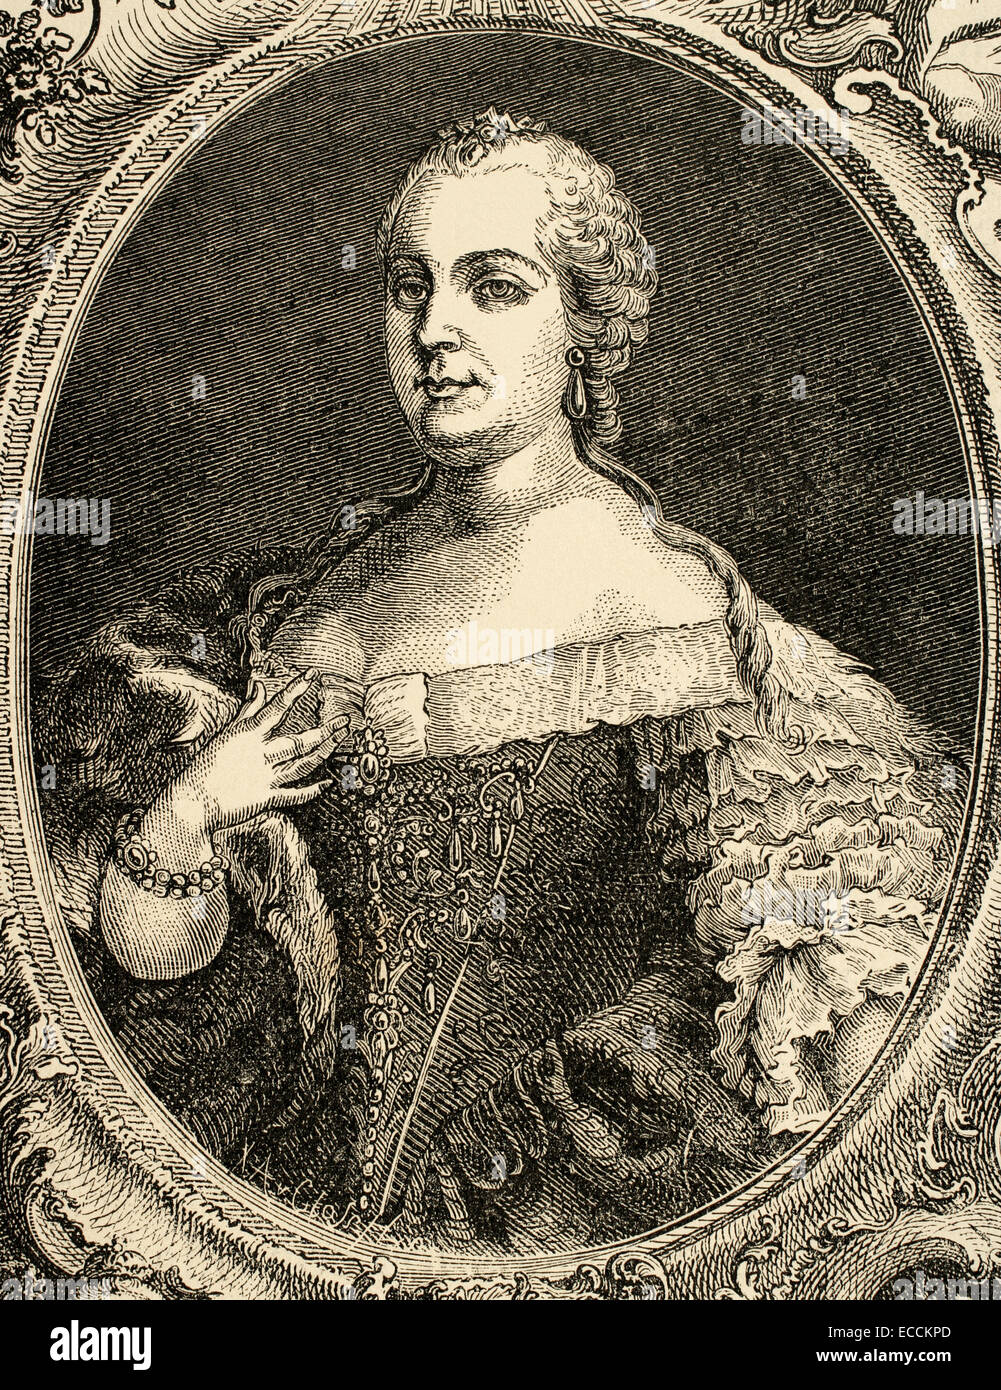 Marie-thérèse (1717-1780), Archiduchesse d'Ausria, Reine de Hongrie et de Bohème. Portrait. Gravure, 1882. Banque D'Images